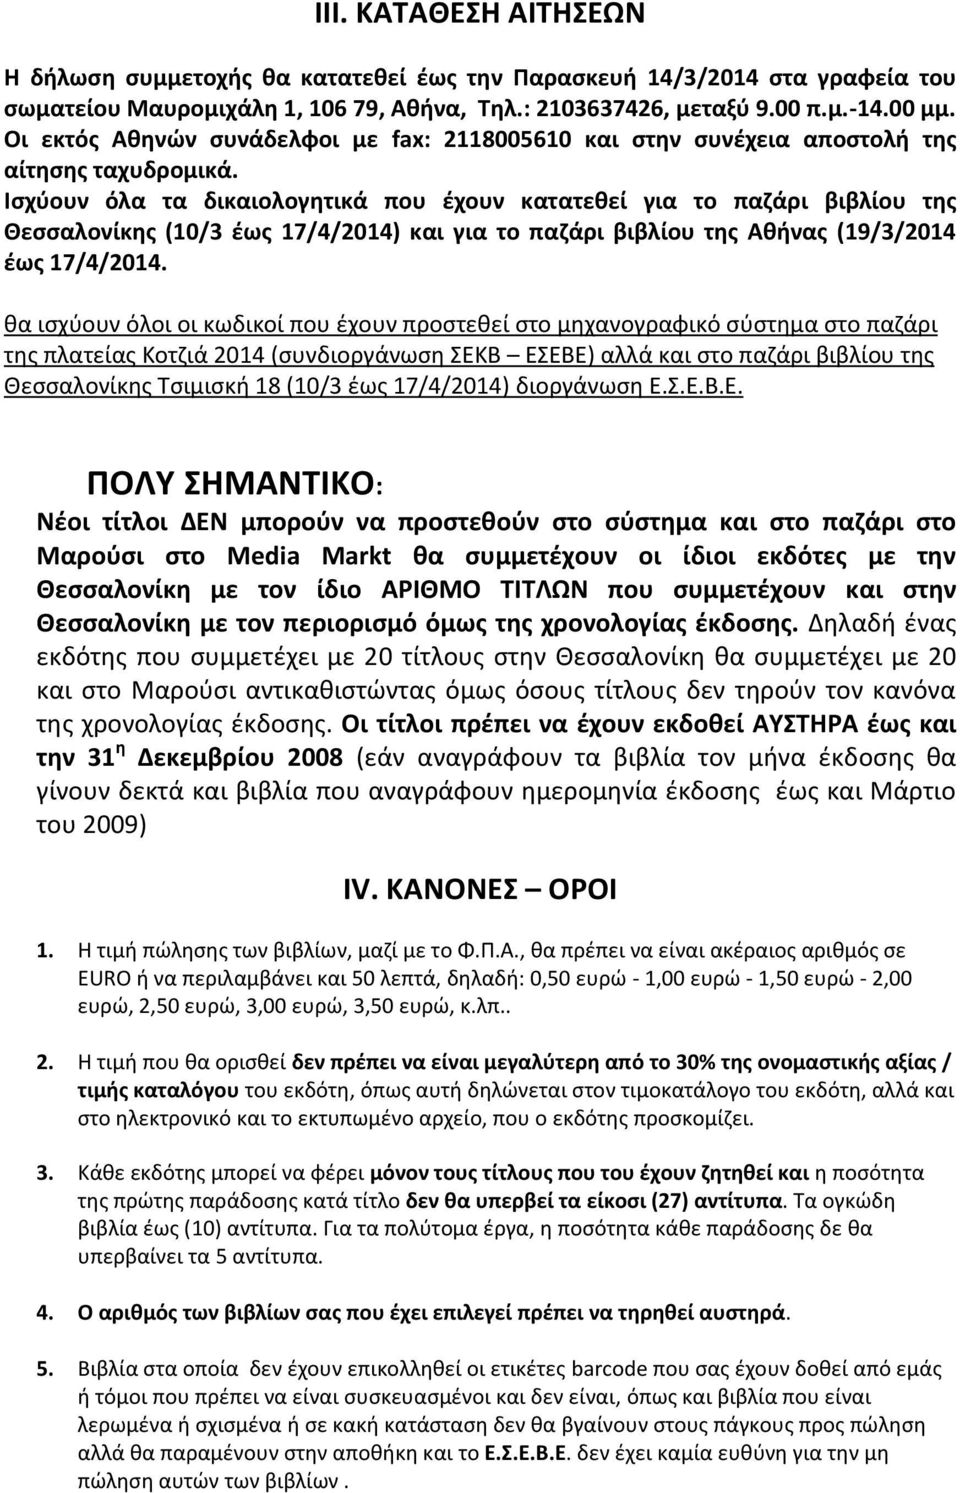 Ισχύουν όλα τα δικαιολογητικά που έχουν κατατεθεί για το παζάρι βιβλίου της Θεσσαλονίκης (10/3 έως 17/4/2014) και για το παζάρι βιβλίου της Αθήνας (19/3/2014 έως 17/4/2014.